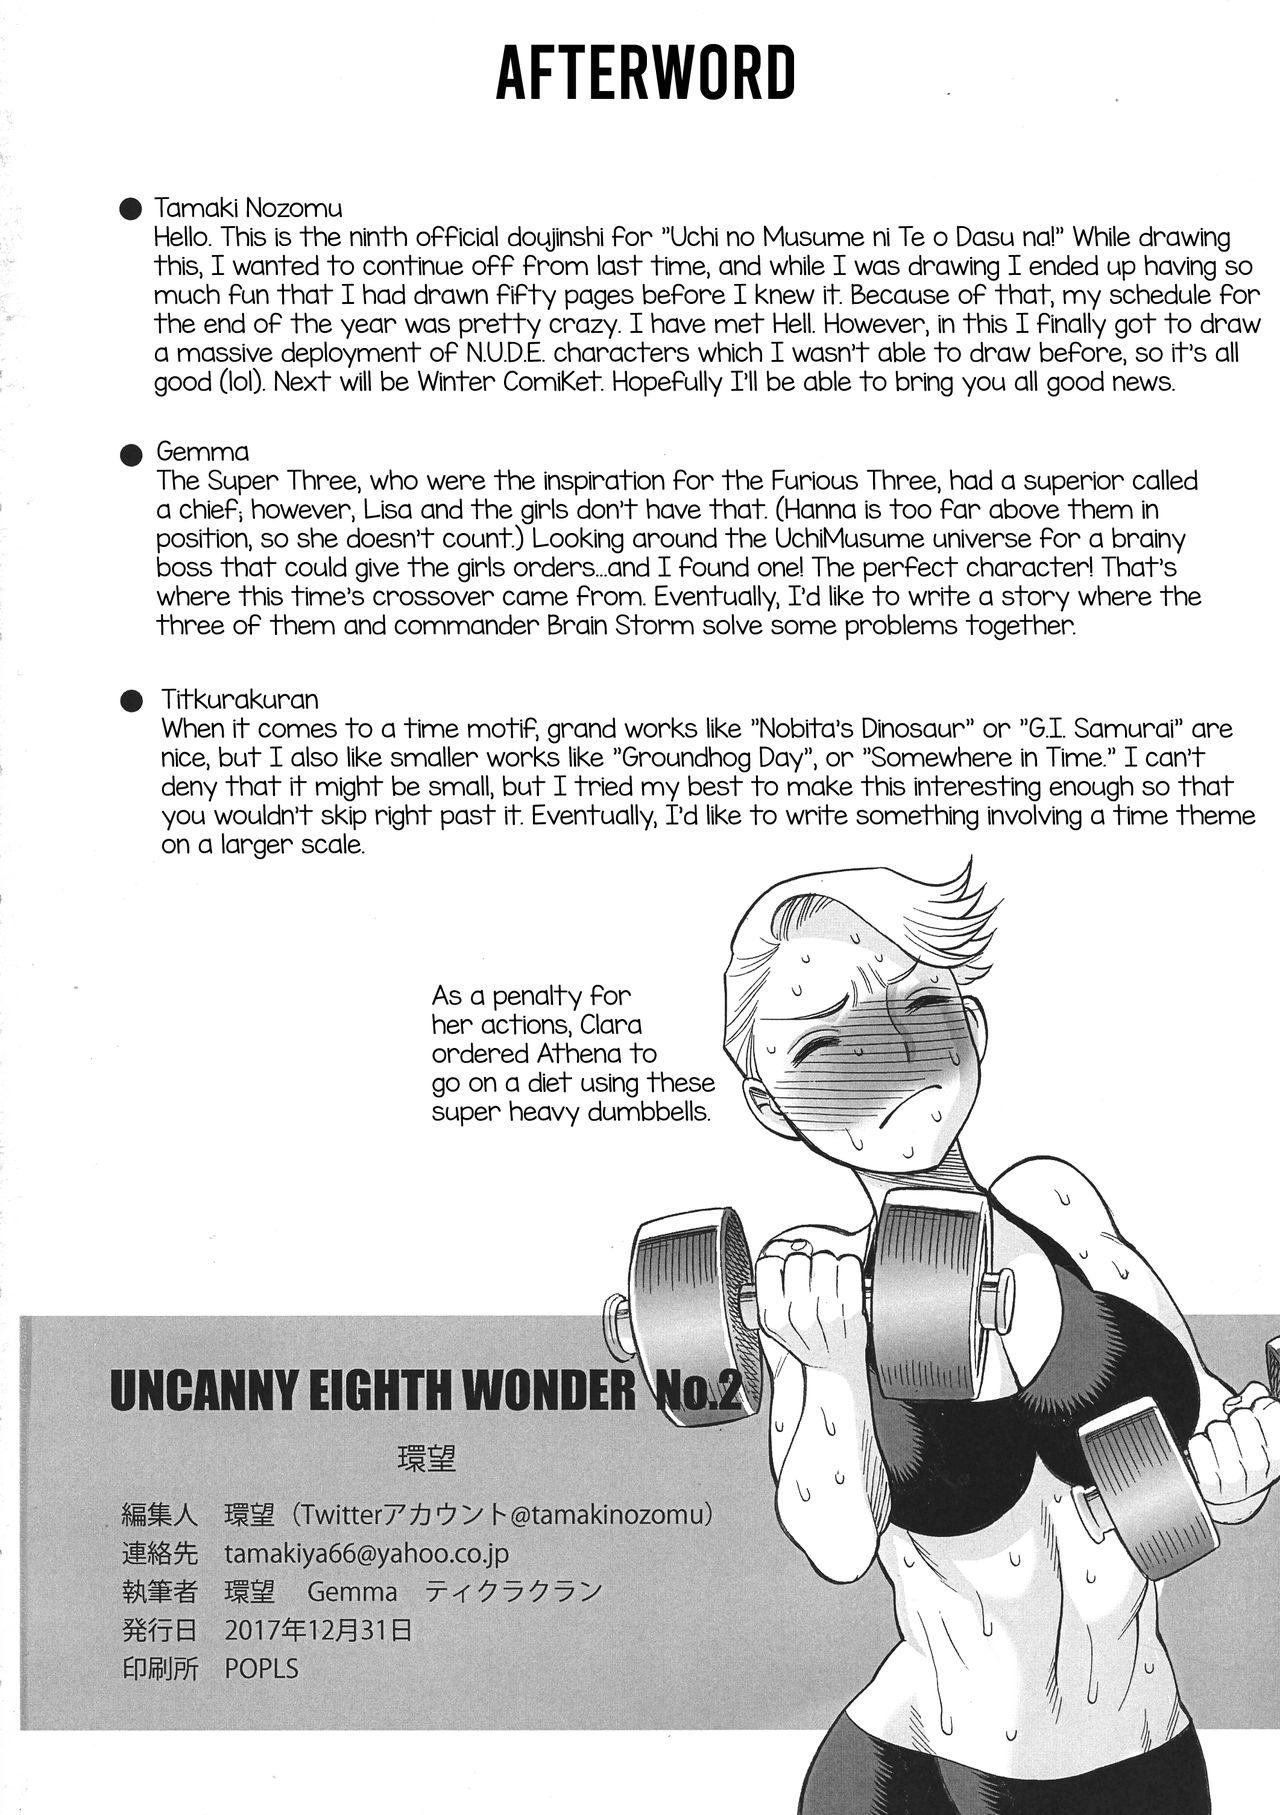 Softcore Uncanny EIGHTHWONDER No.2 - Uchi no musume ni te o dasuna Anal Sex - Page 55